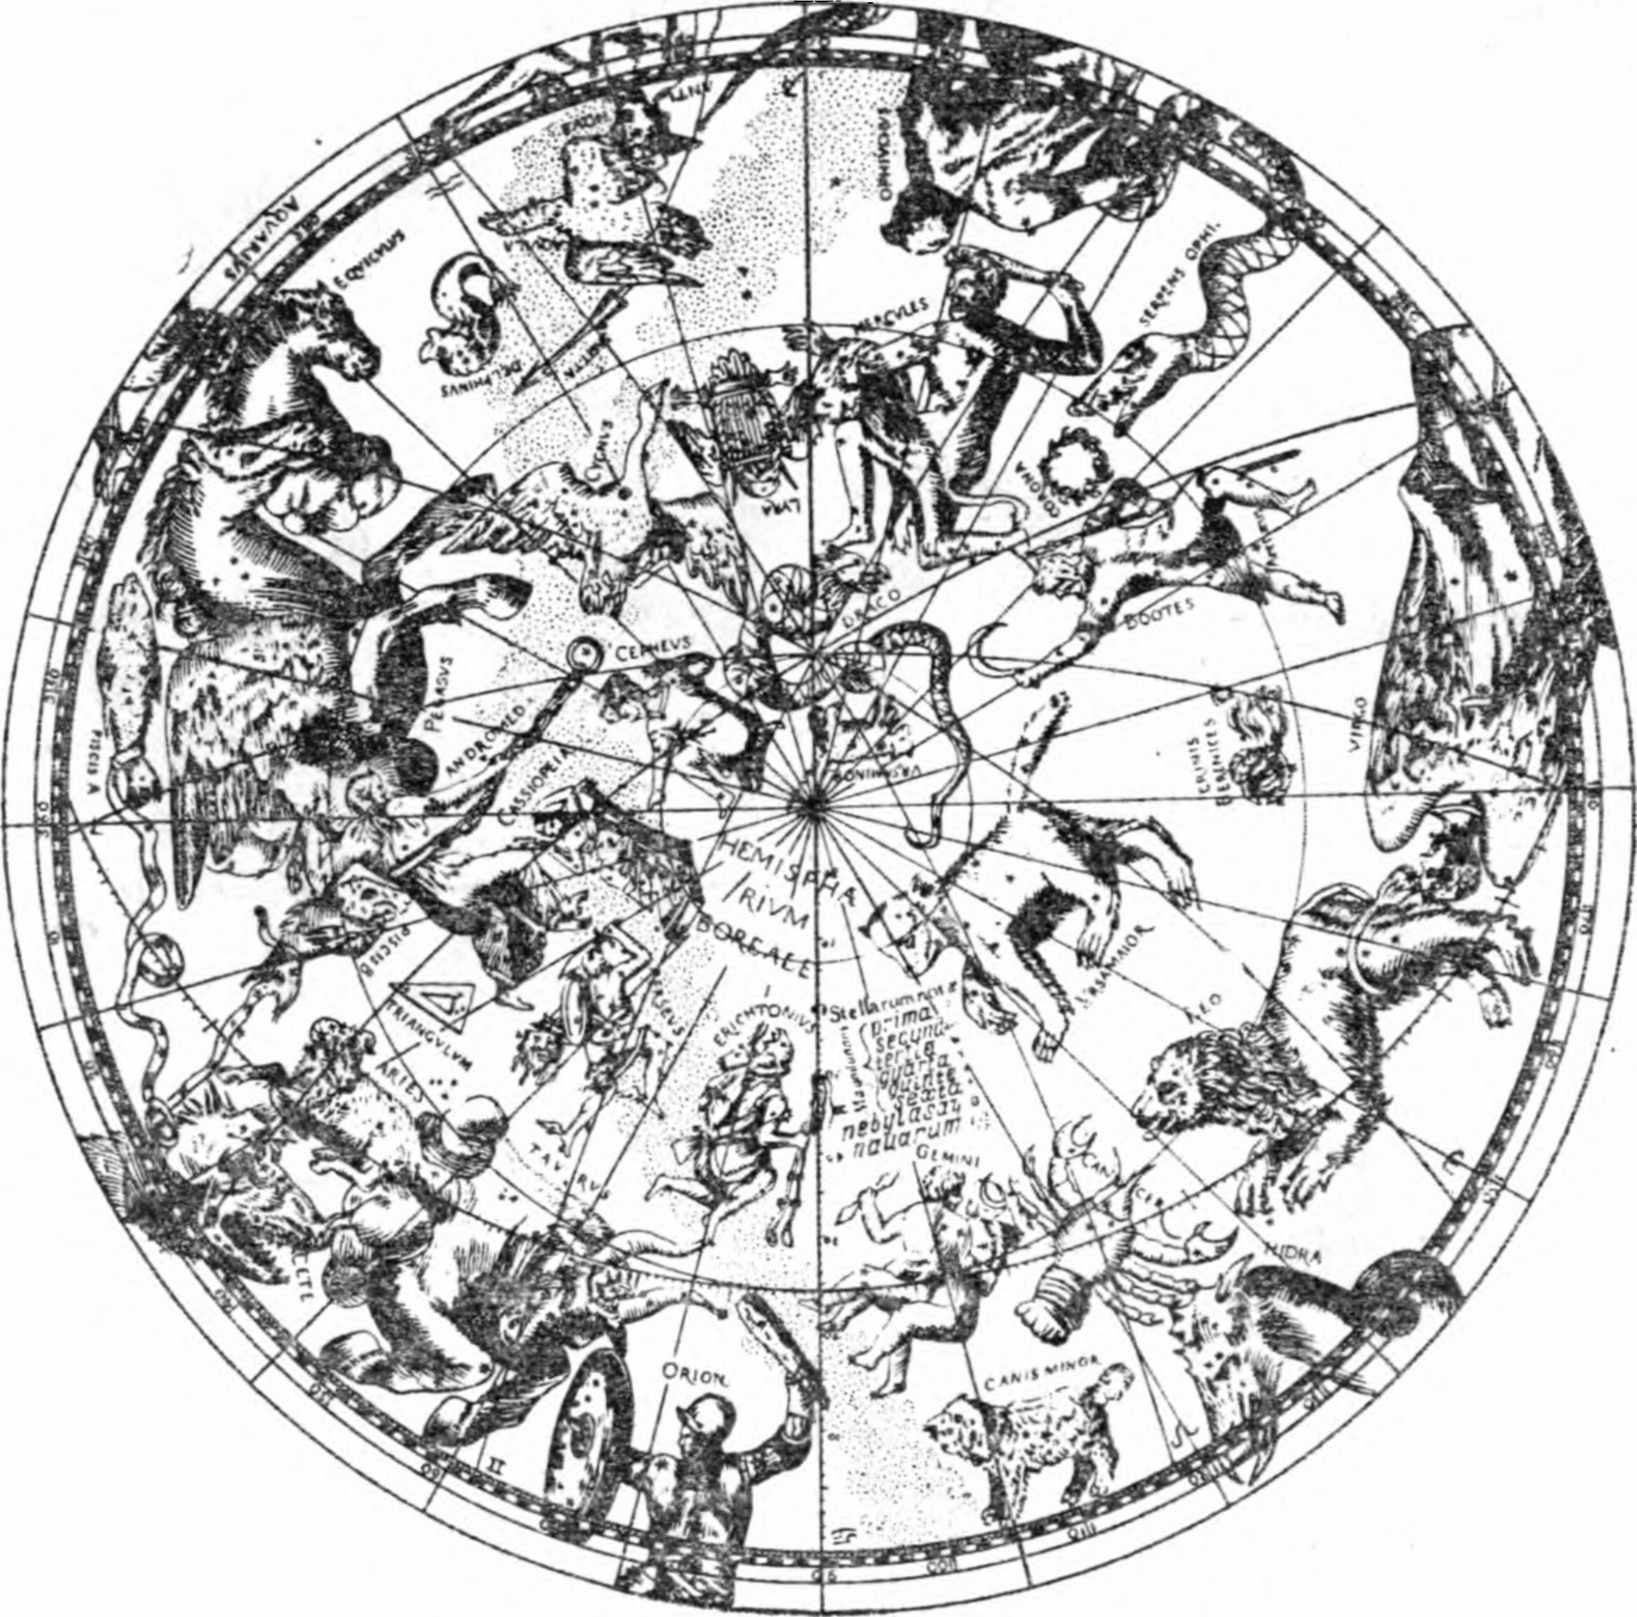 Рис. 3. «Небесный зверинец» — старинная карта звездного неба с фигурами созвездий